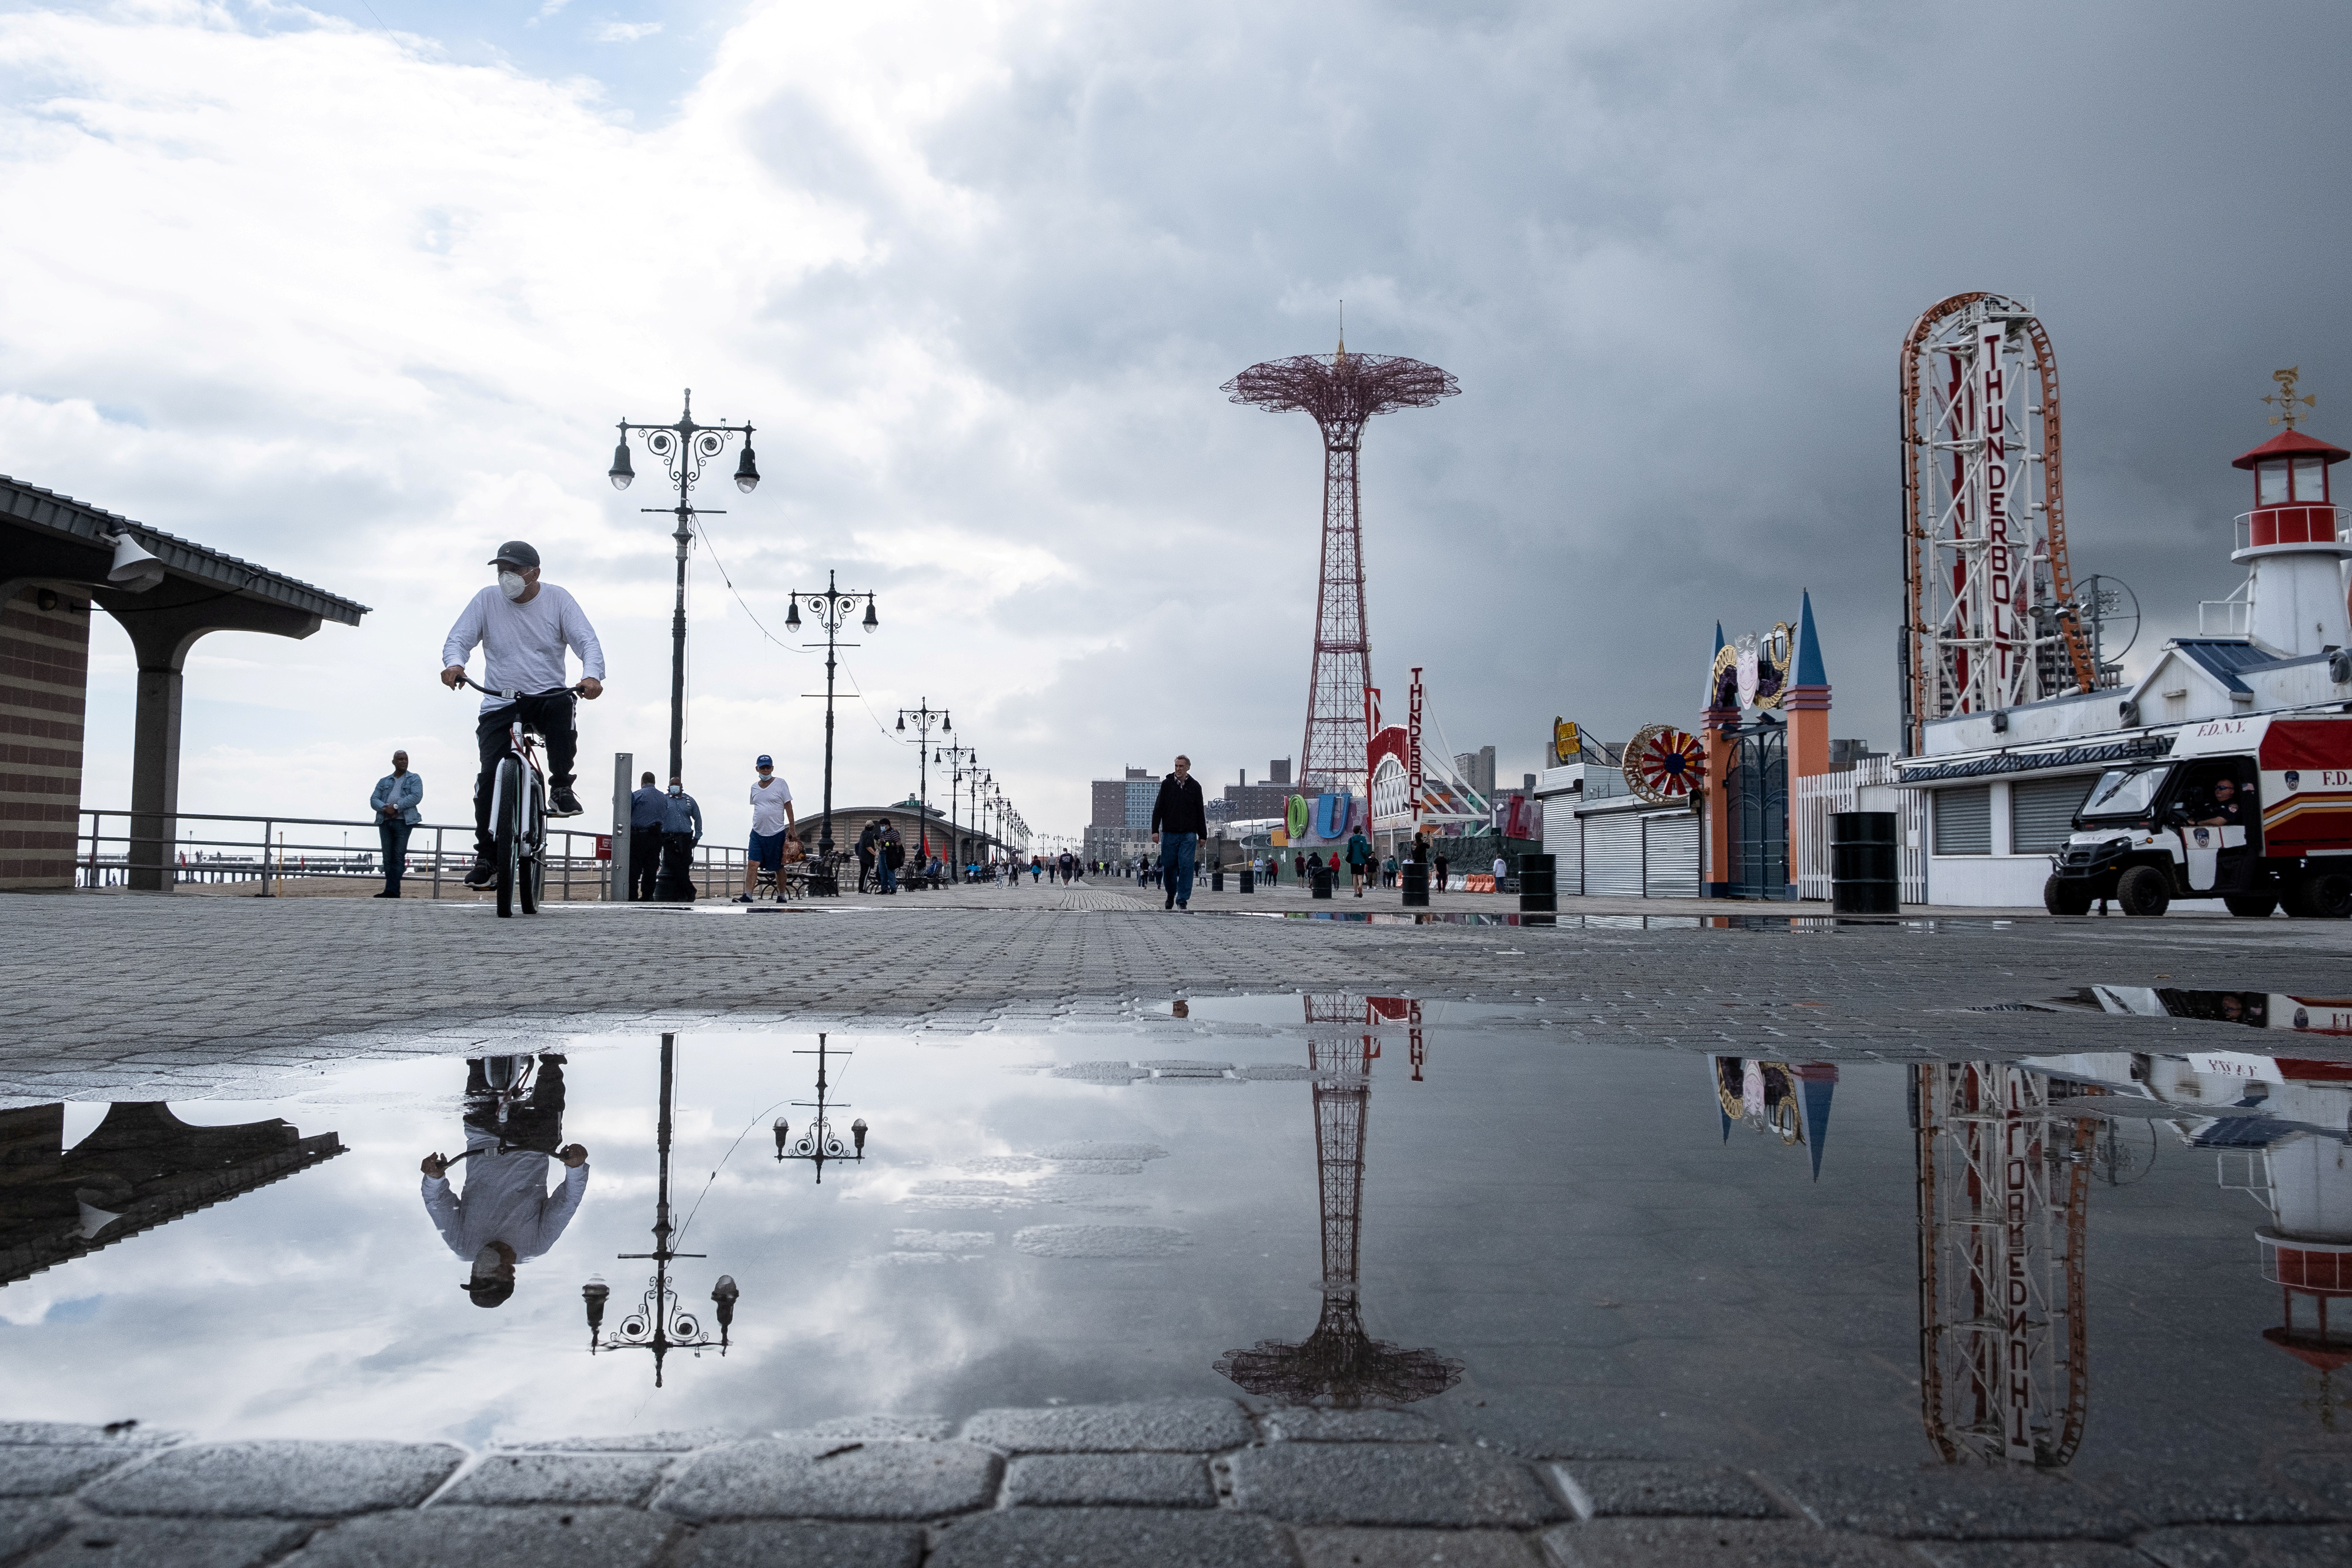 La vista en Coney Island, Brooklyn, sin mucha gente por la lluvia 